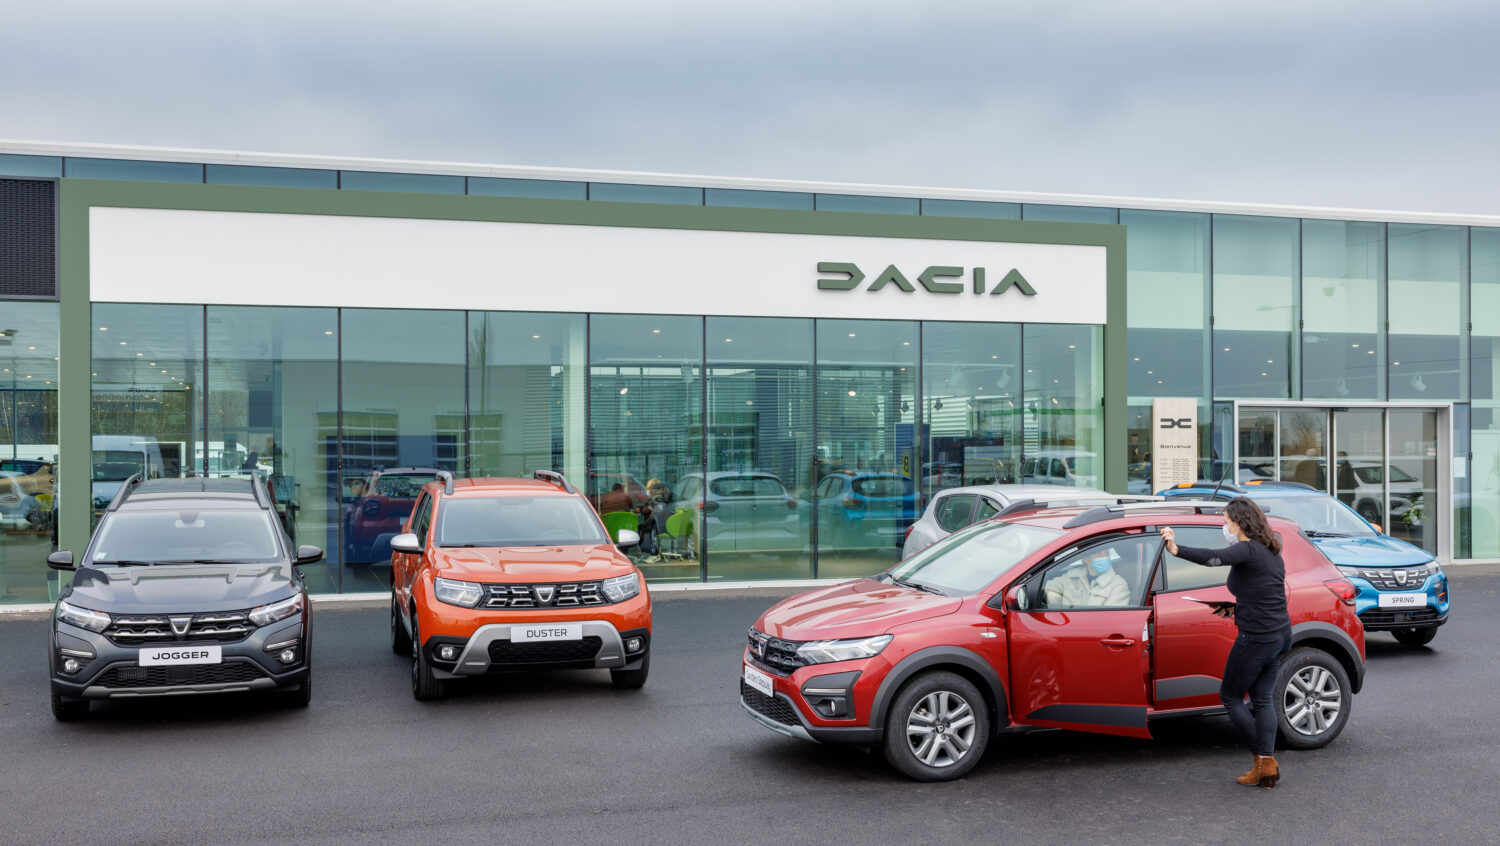 2022 - Story Dacia - Le nouveau visage de Dacia arrive en concession